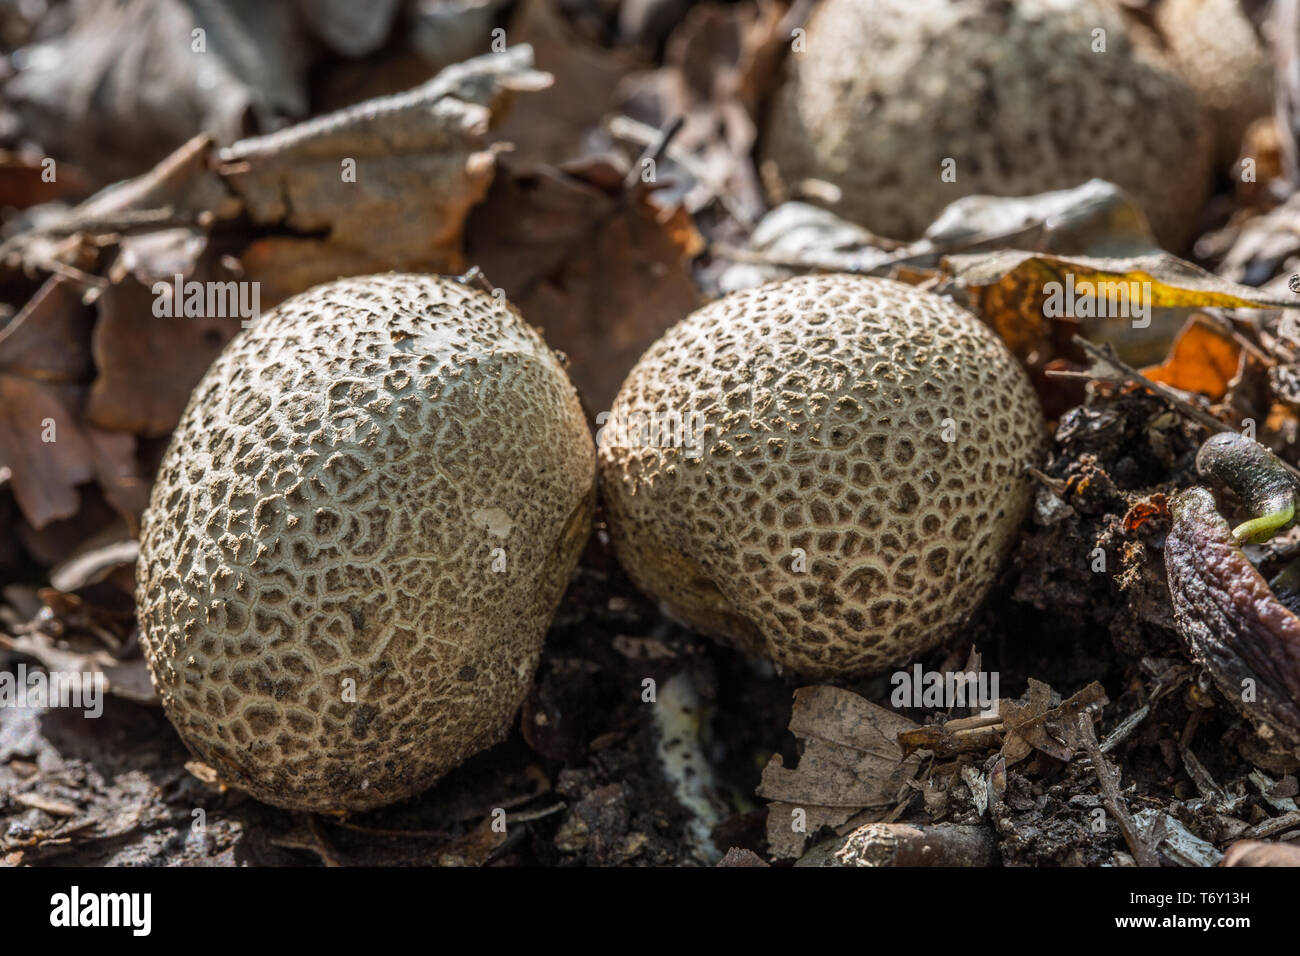 Mushroom on forest floor Stock Photo